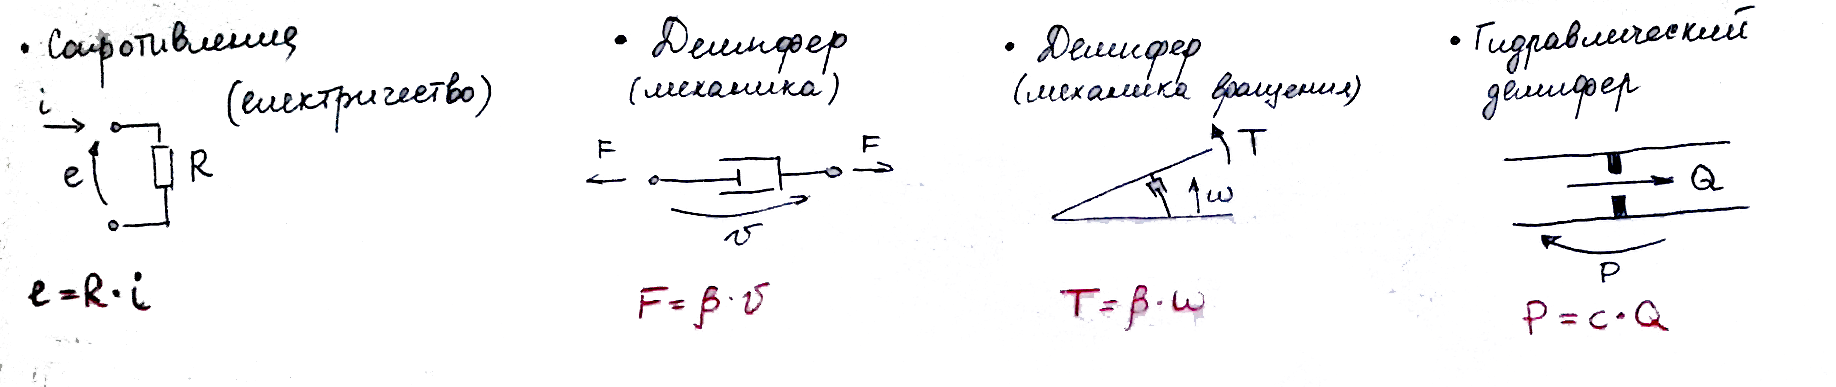 Моделирование динамических систем (метод Лагранжа и Bond graph approach) - 30